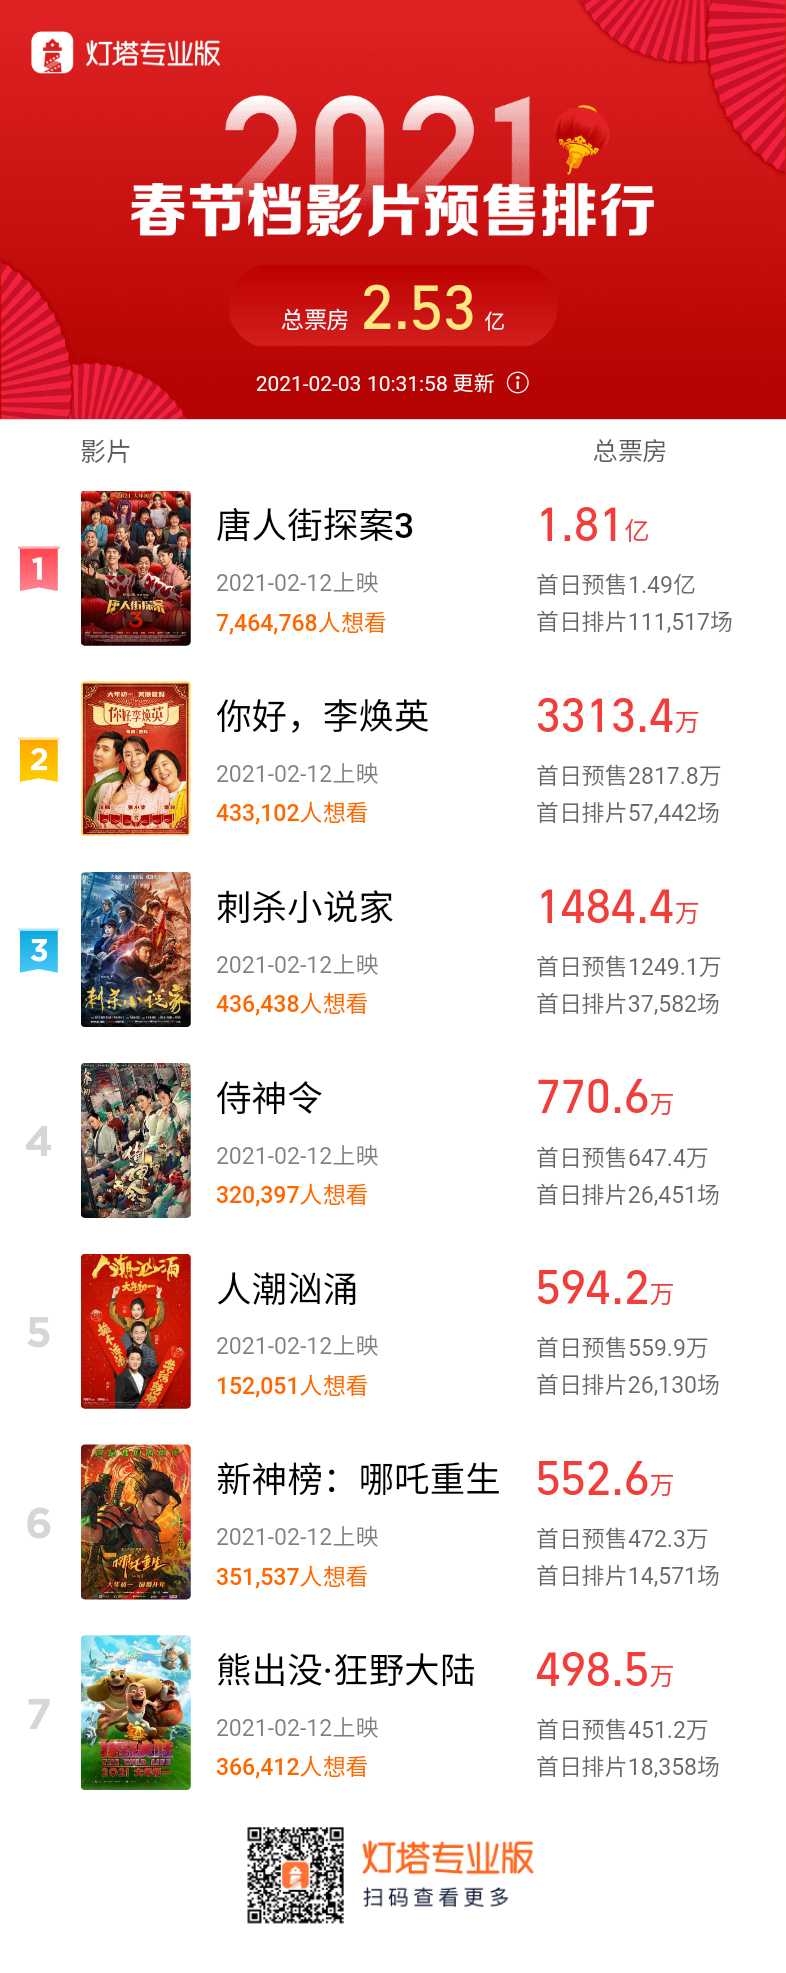 春节档电影预售票房超过2.5亿 《唐人街探案3》贡献7成